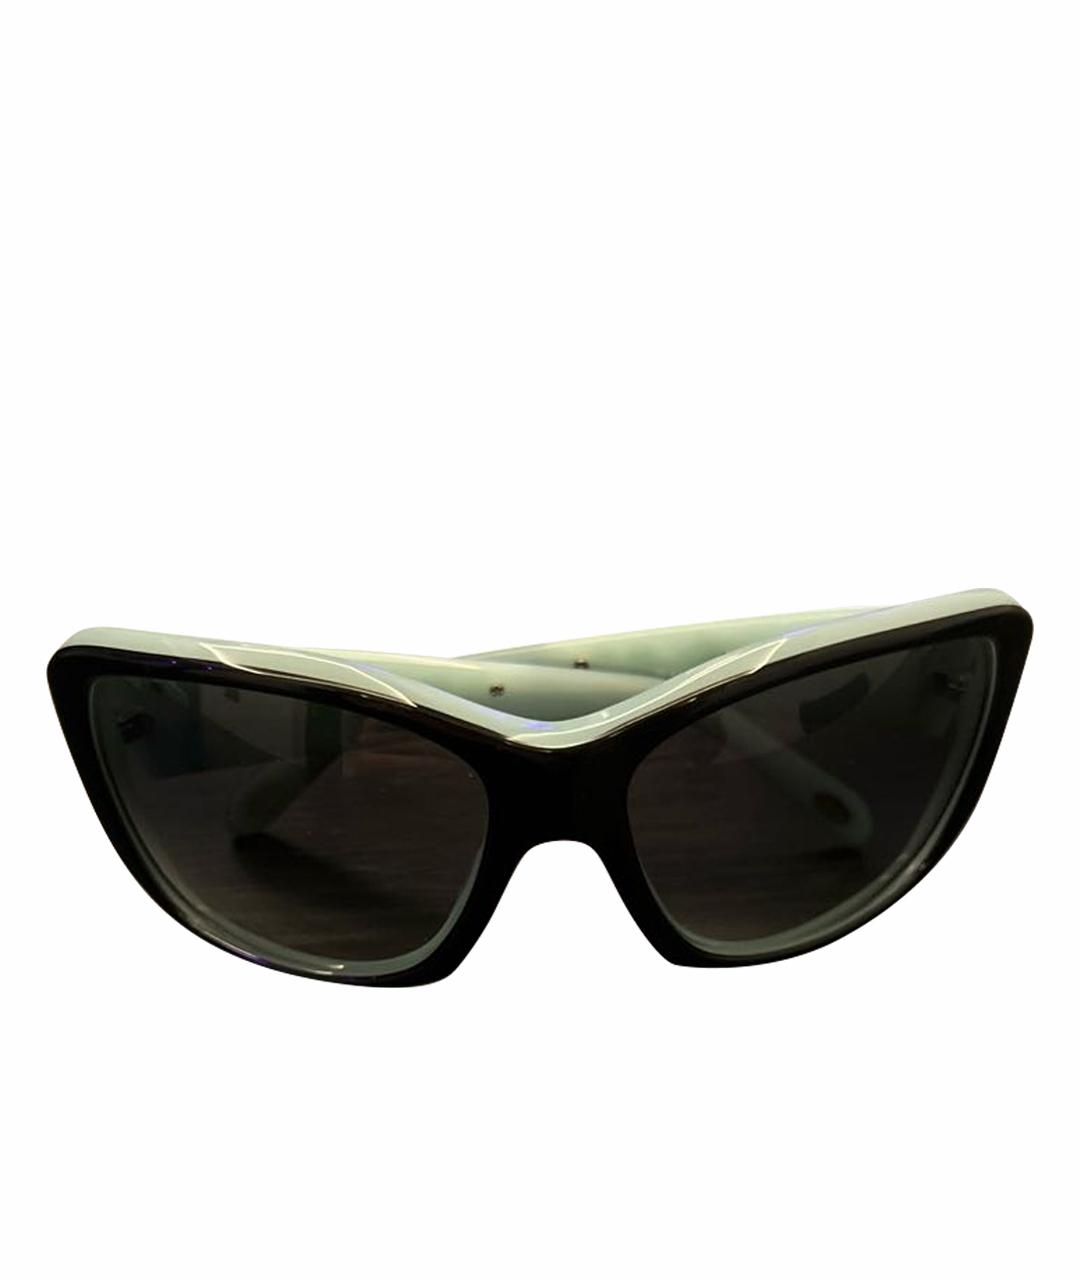 TIFFANY&CO Голубые пластиковые солнцезащитные очки, фото 1